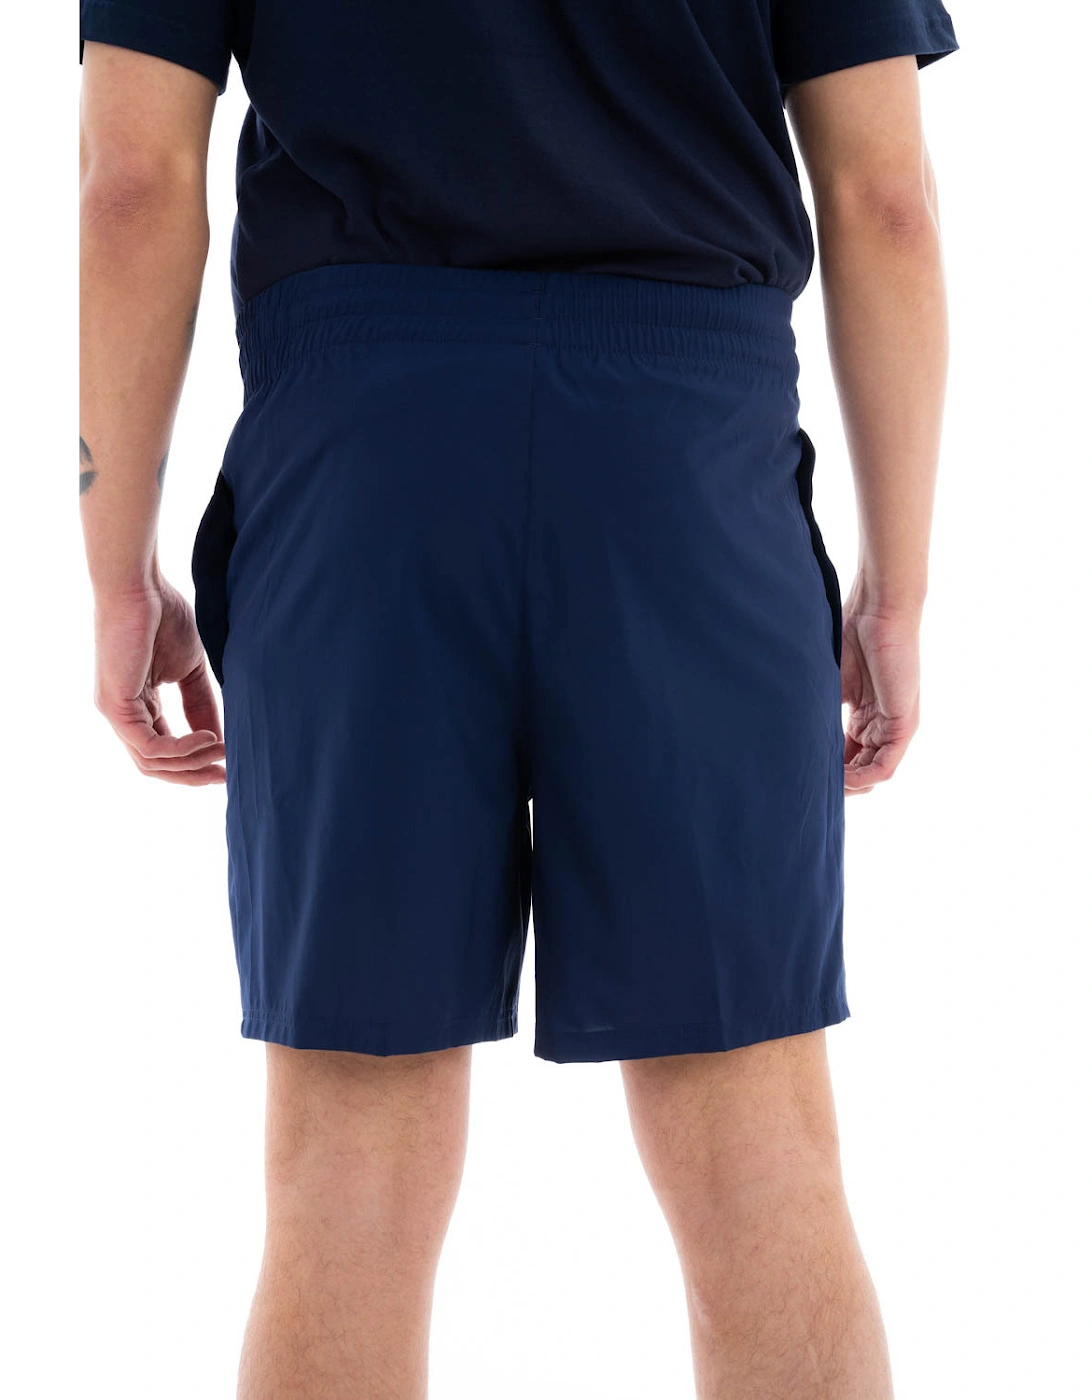 Mens Training Blaster Shorts (Navy)